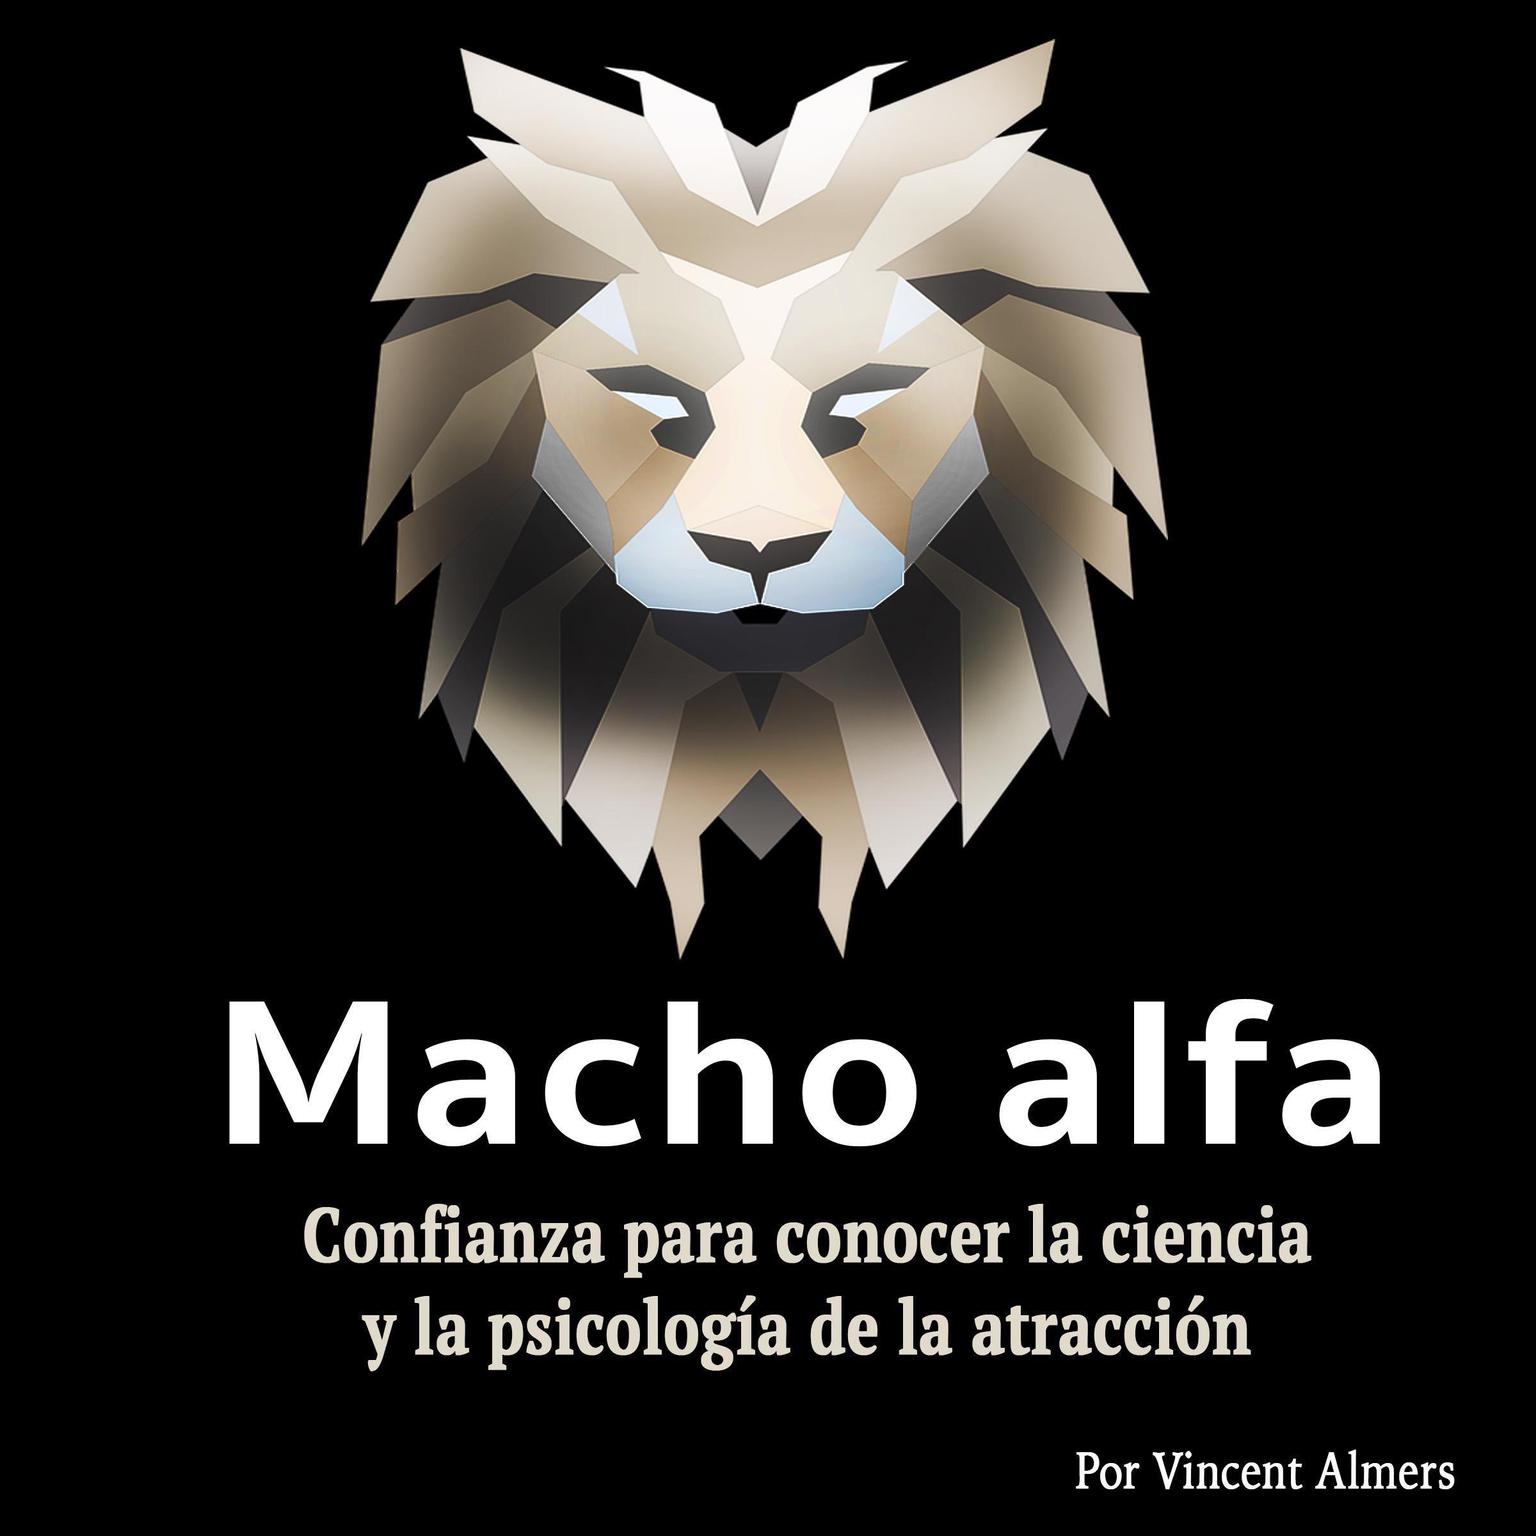 Macho alfa: Confianza para conocer la ciencia y la psicología de la atracción (Spanish Edition) Audiobook, by Vincent Almers